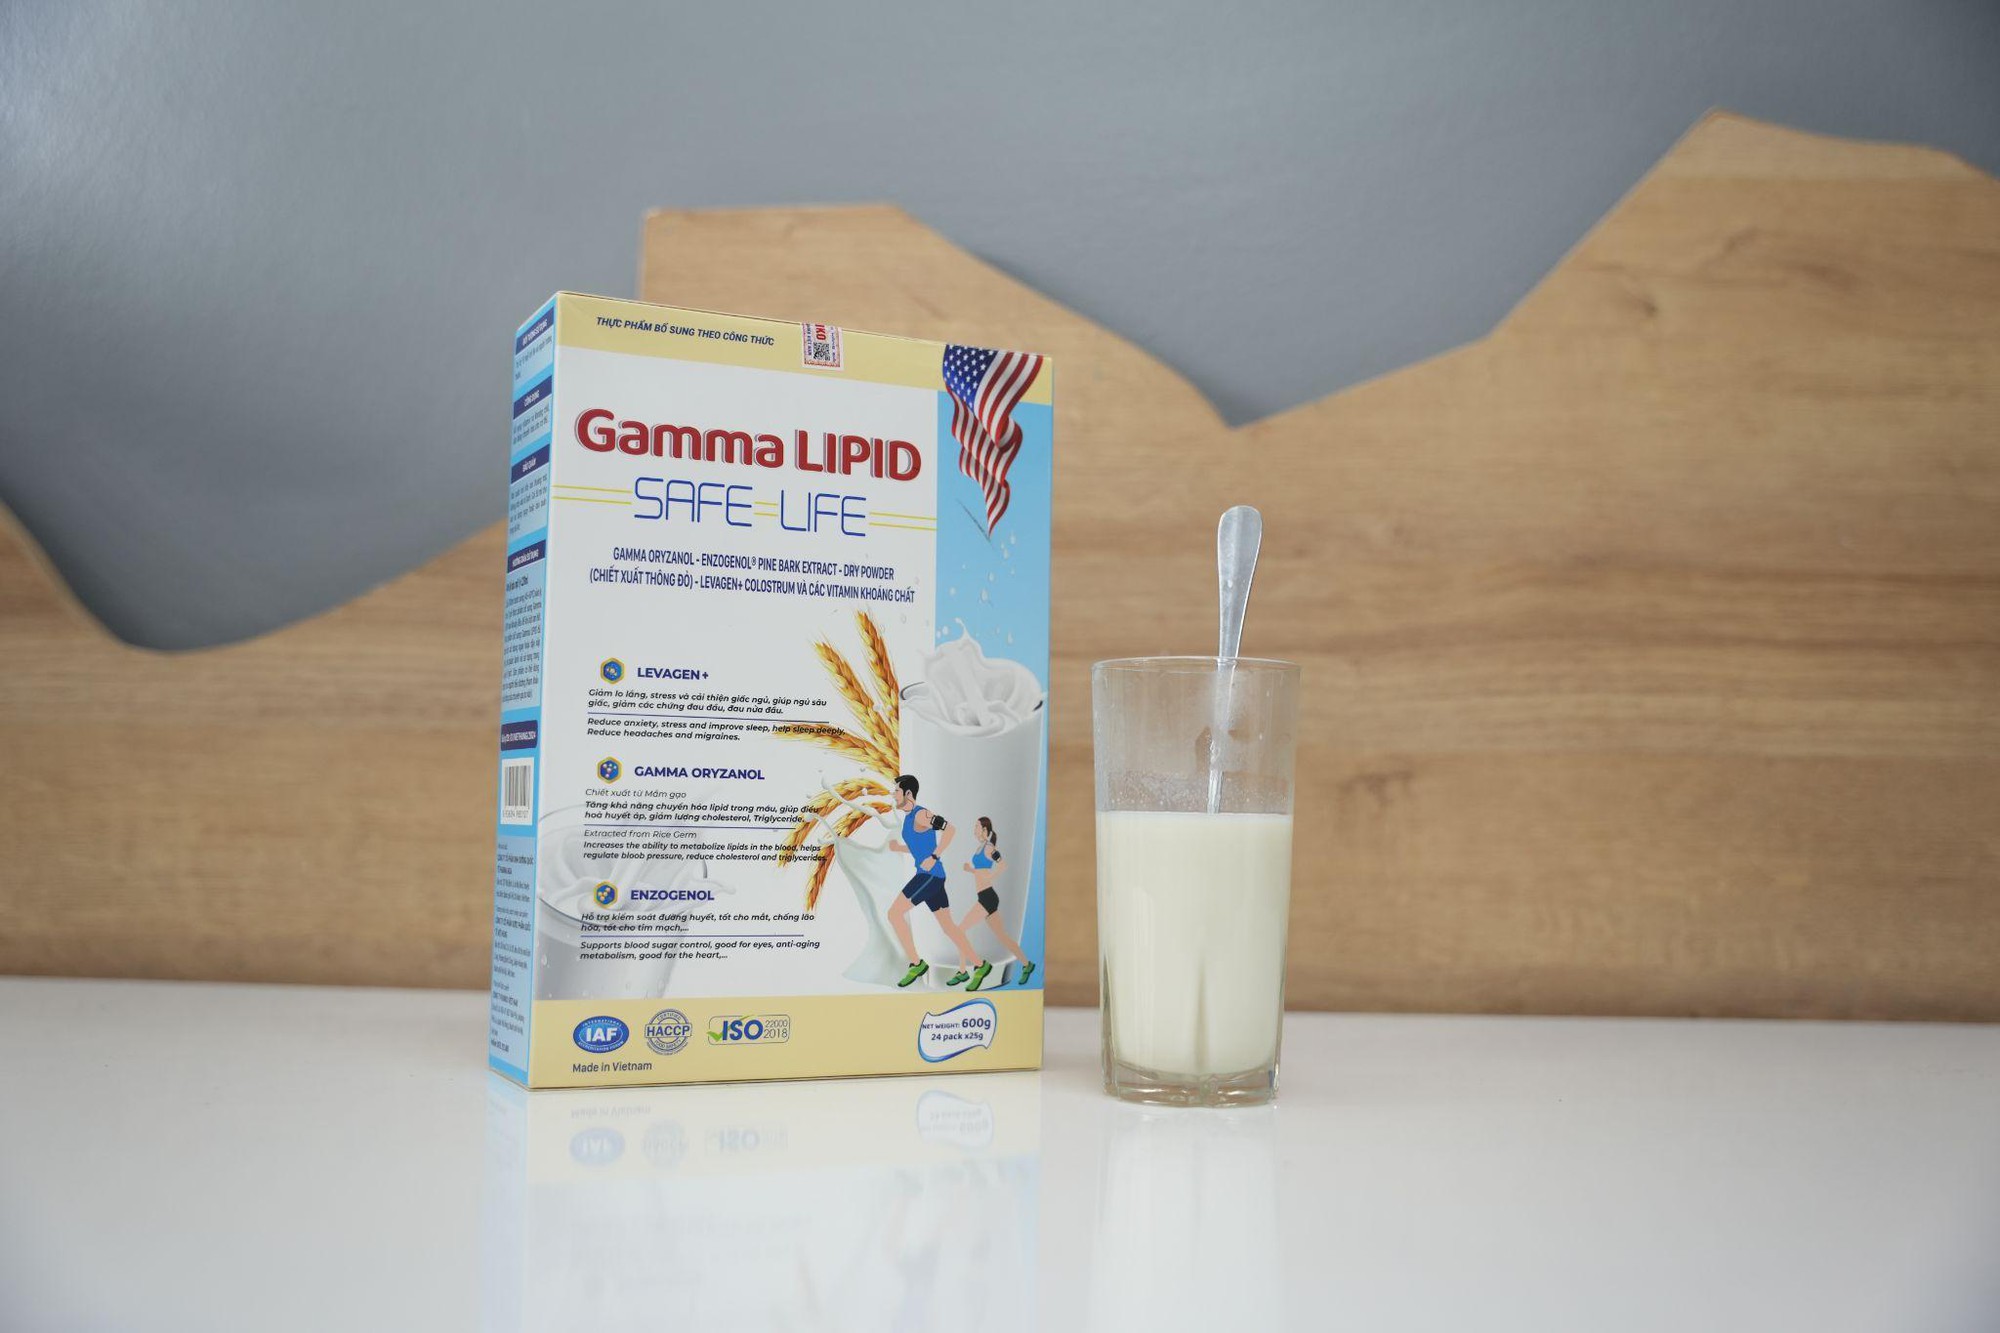 Mất ngủ kéo dài, mỡ máu cao uống GAMA LIPID, mua 1 được 4: Giải pháp sức khỏe toàn diện- Ảnh 4.